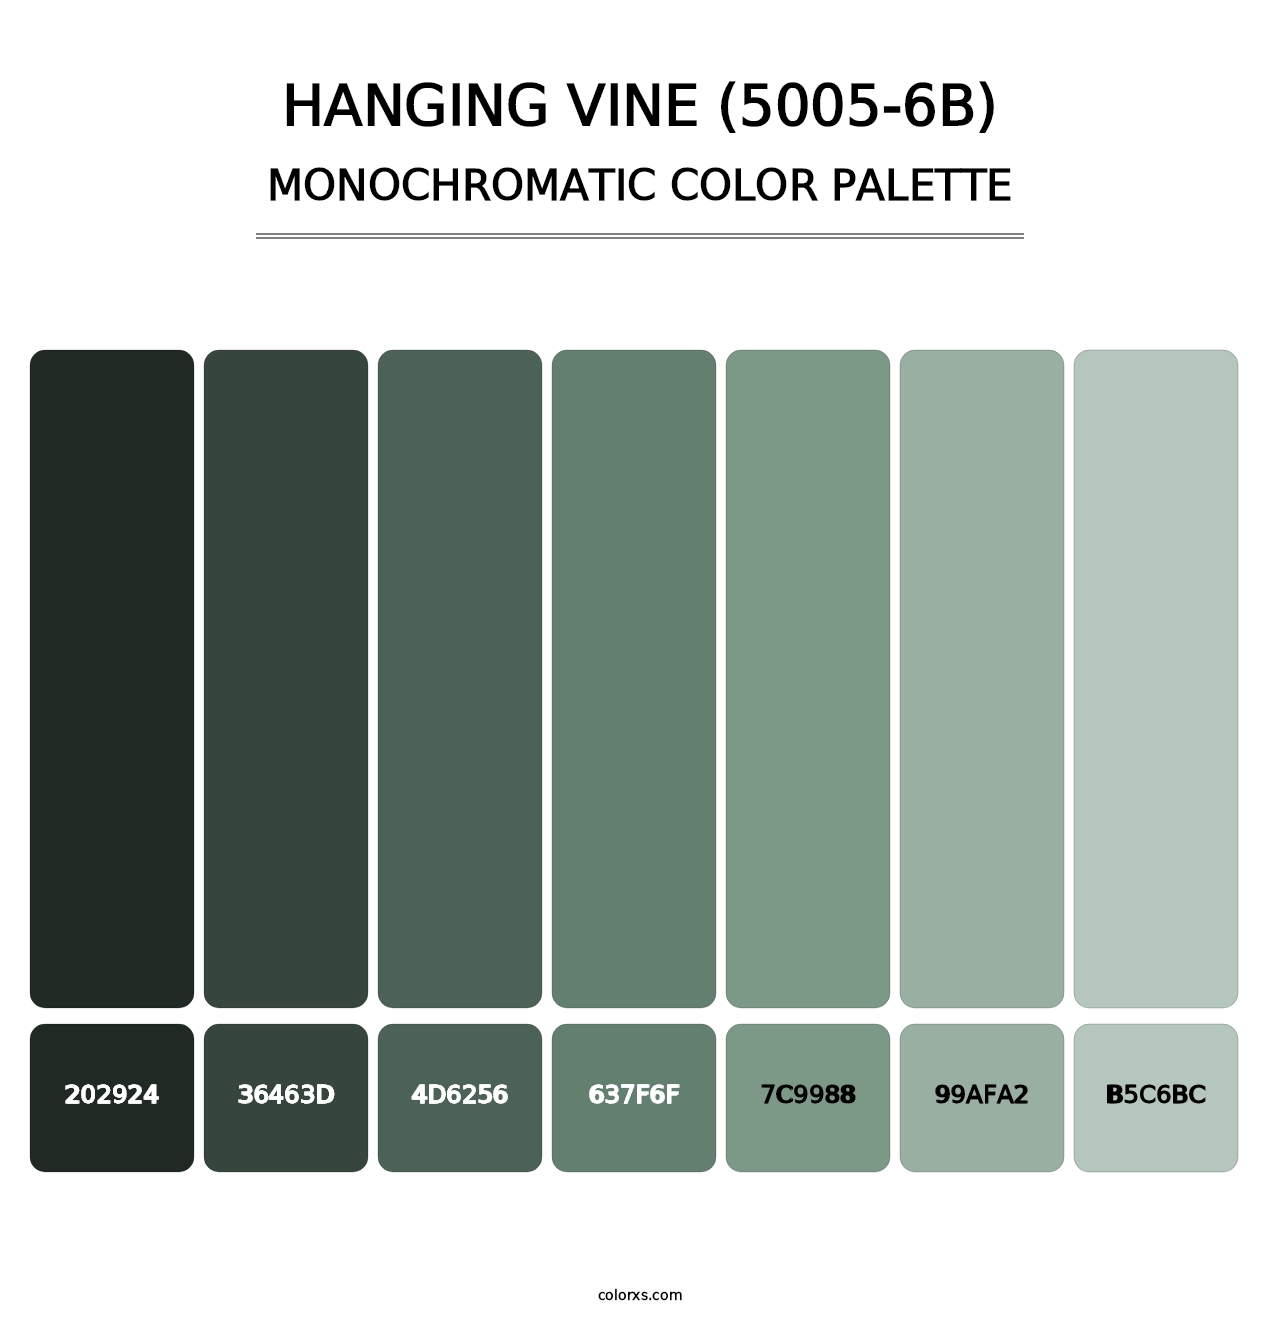 Hanging Vine (5005-6B) - Monochromatic Color Palette